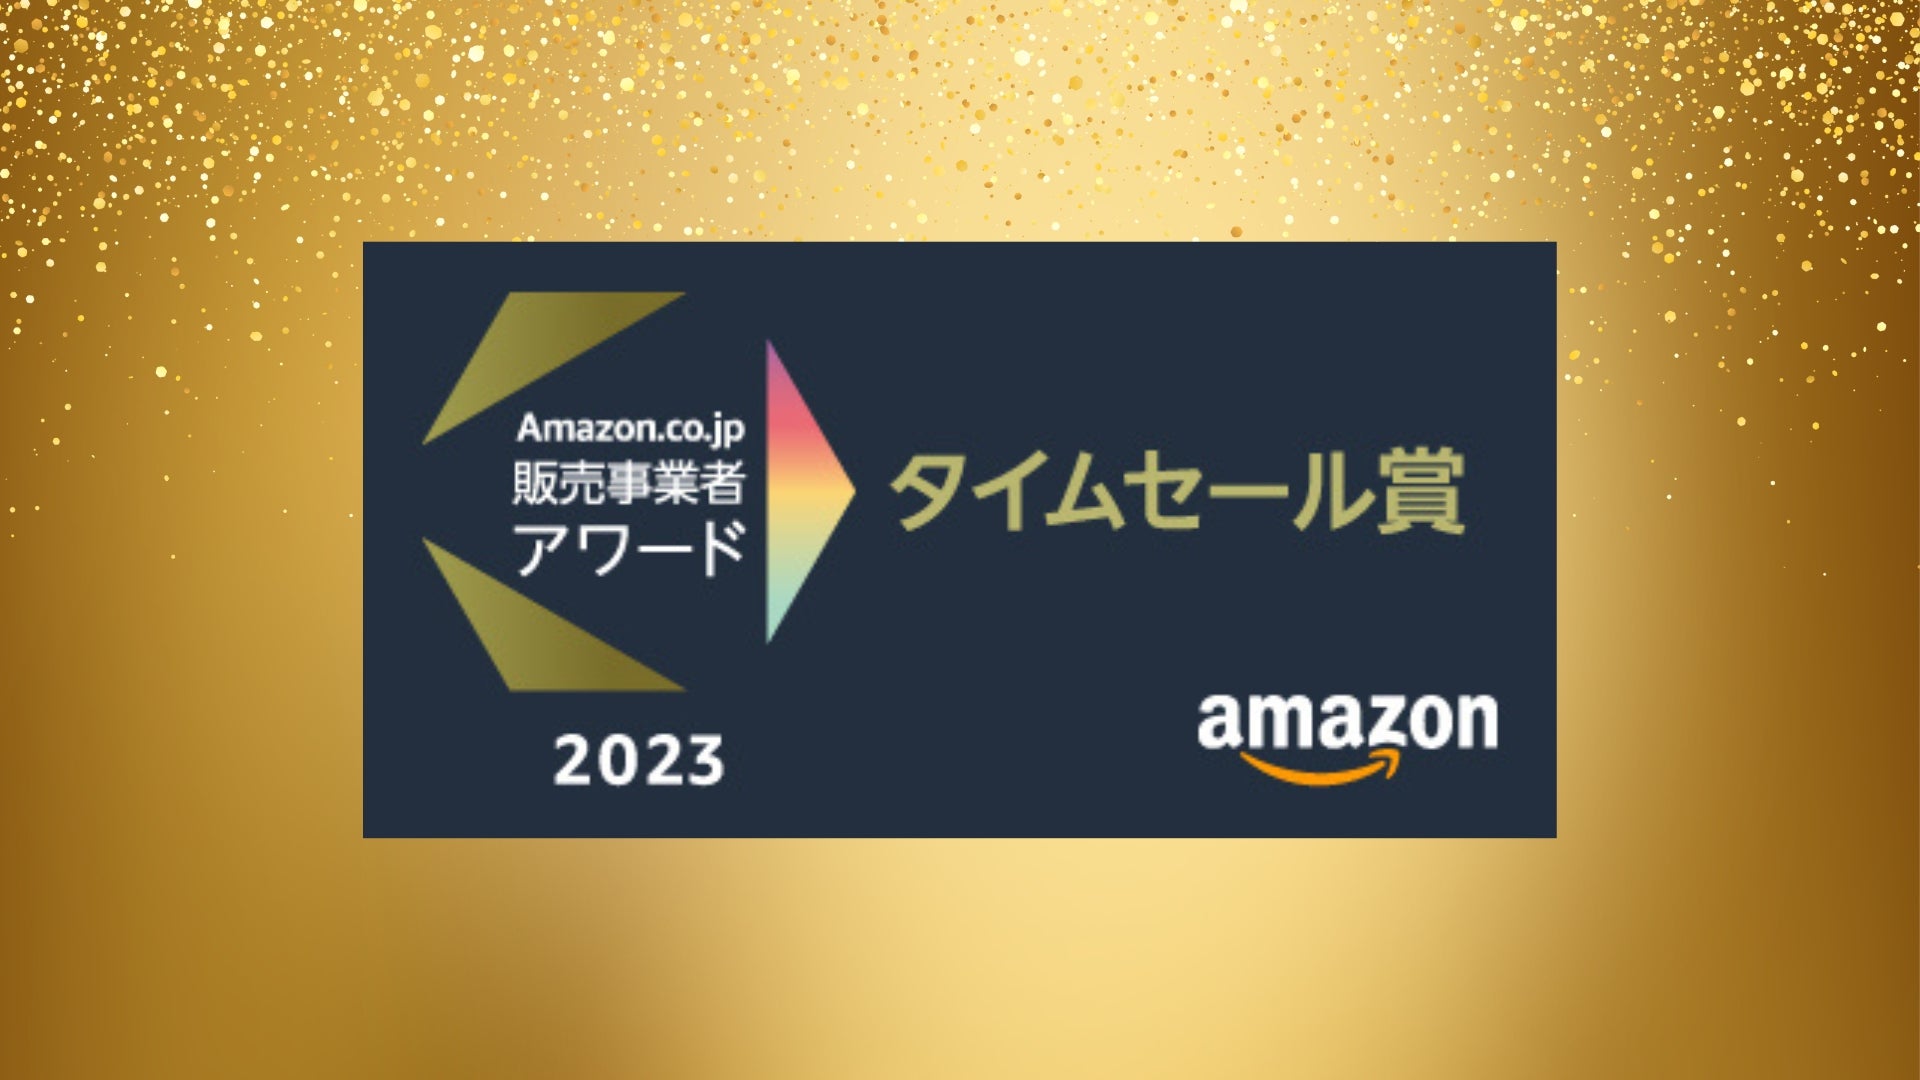 ステディジャパン、「Amazon.co.jp 販売事業者アワード」を2年連続受賞！